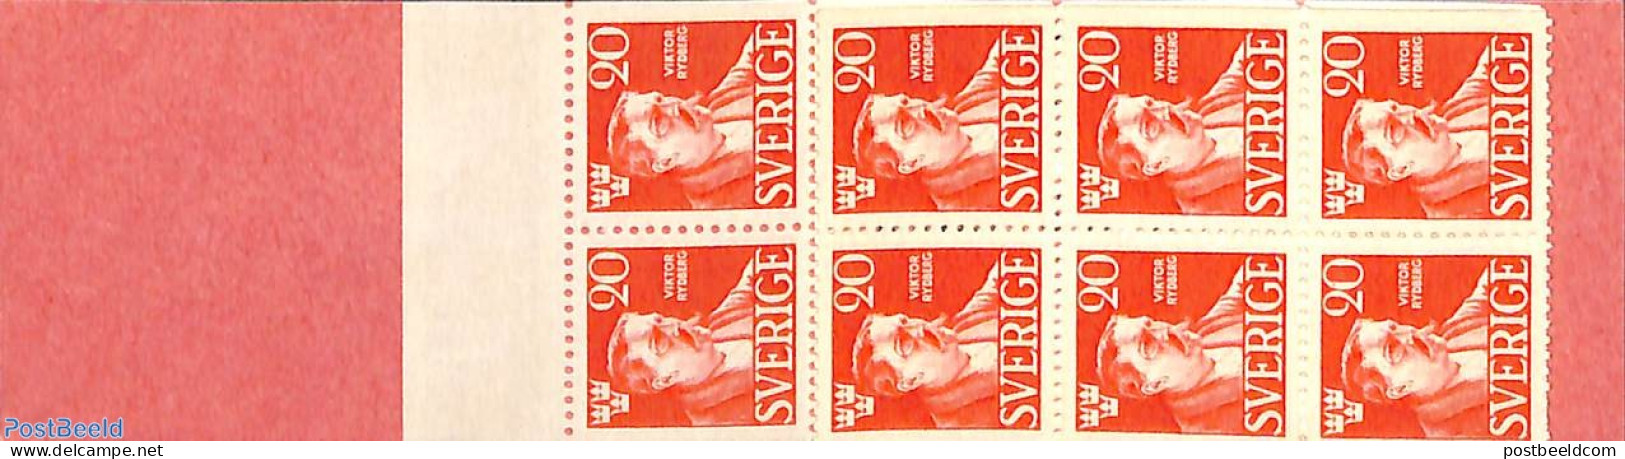 Sweden 1945 Viktor Rydberg Booklet, Mint NH, Stamp Booklets - Art - Authors - Nuovi